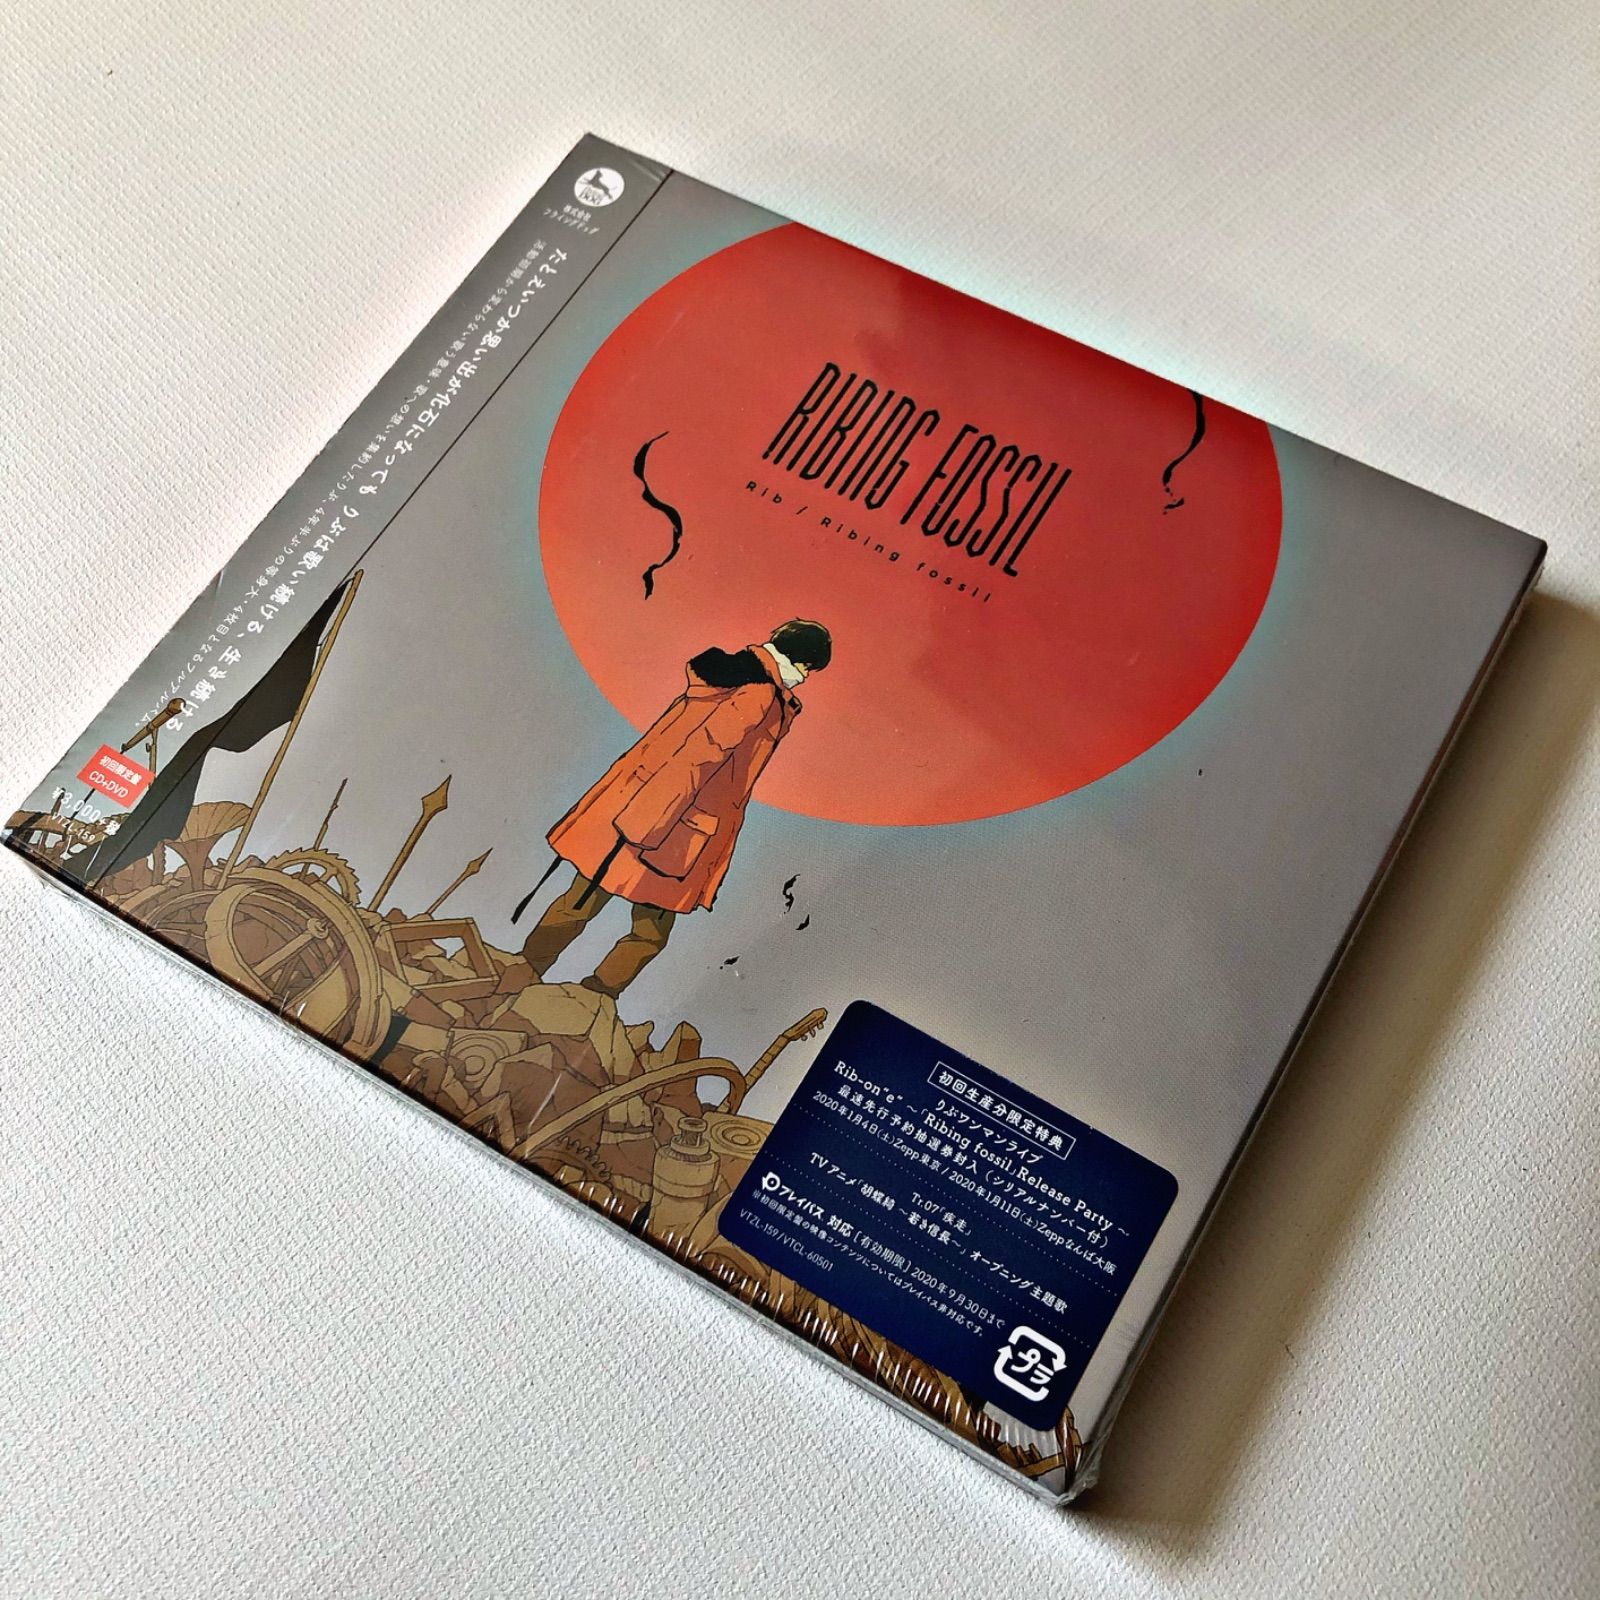 新品 Ribing fossil DVD付初回限定盤 りぶ 音楽 CD 未開封 - メルカリ